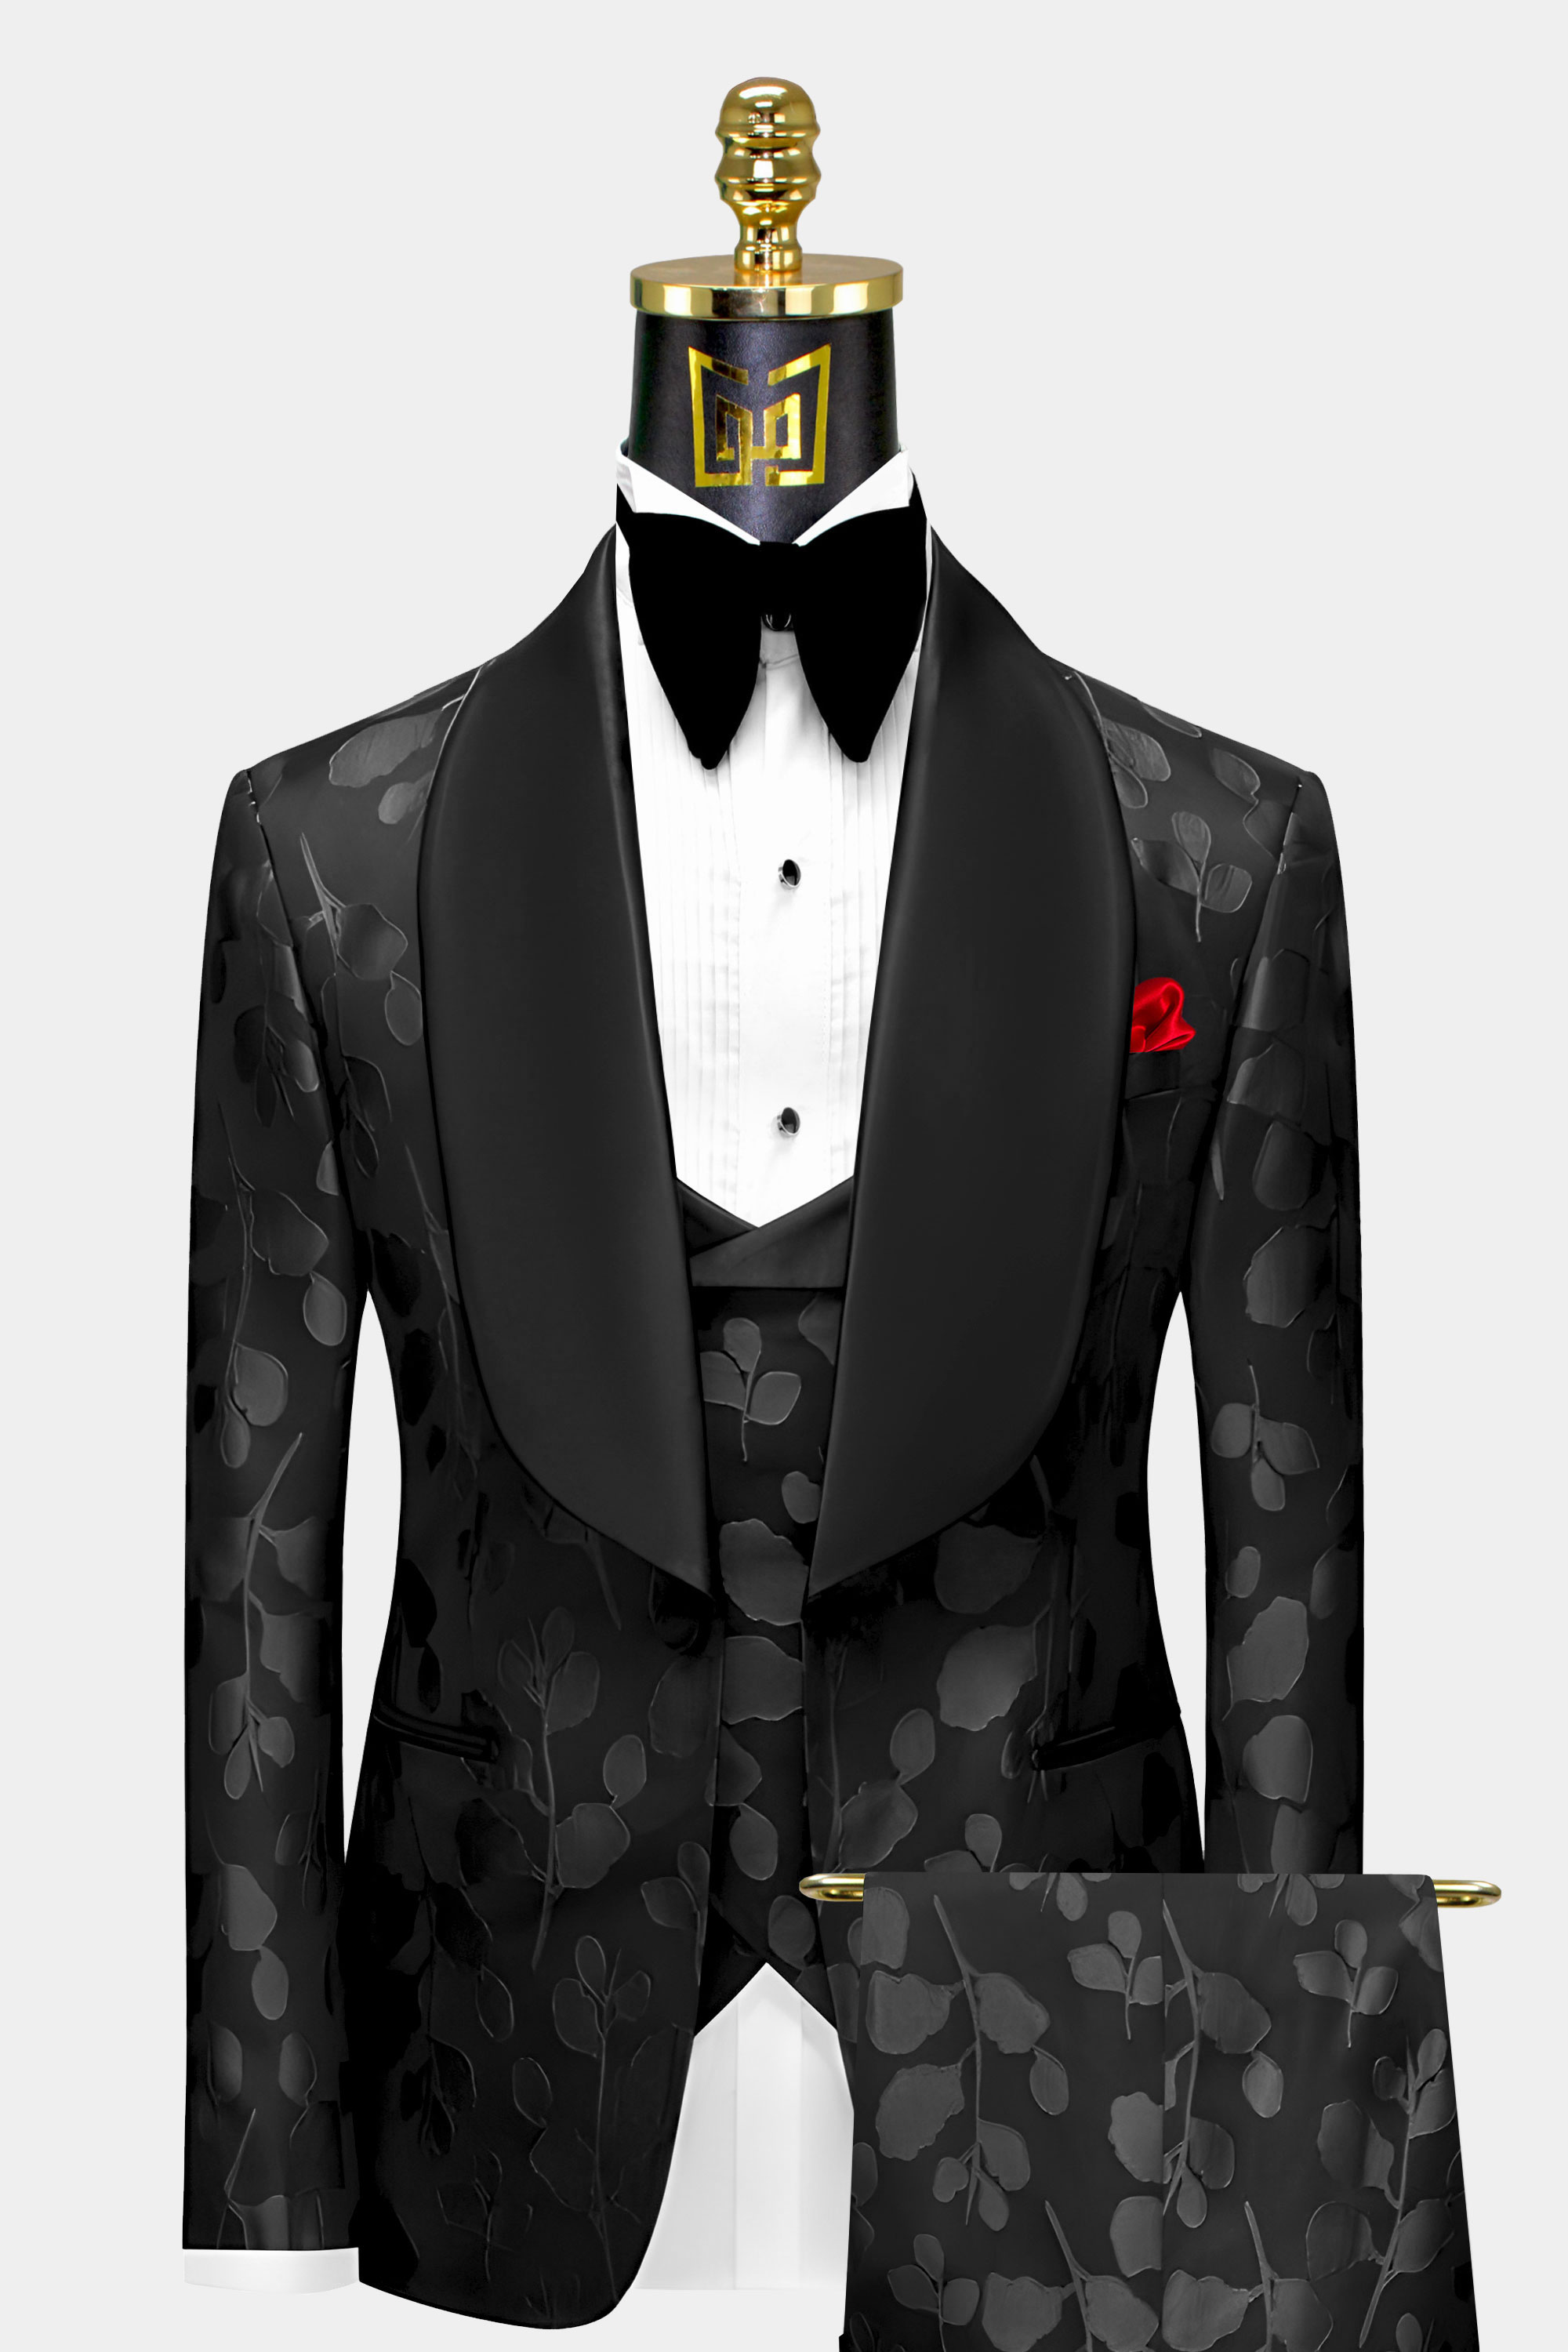 Black-on-Black-Tuxedo-Groom-Wedding-Prom-Suit-For-Men-from-Gentlemansguru.com